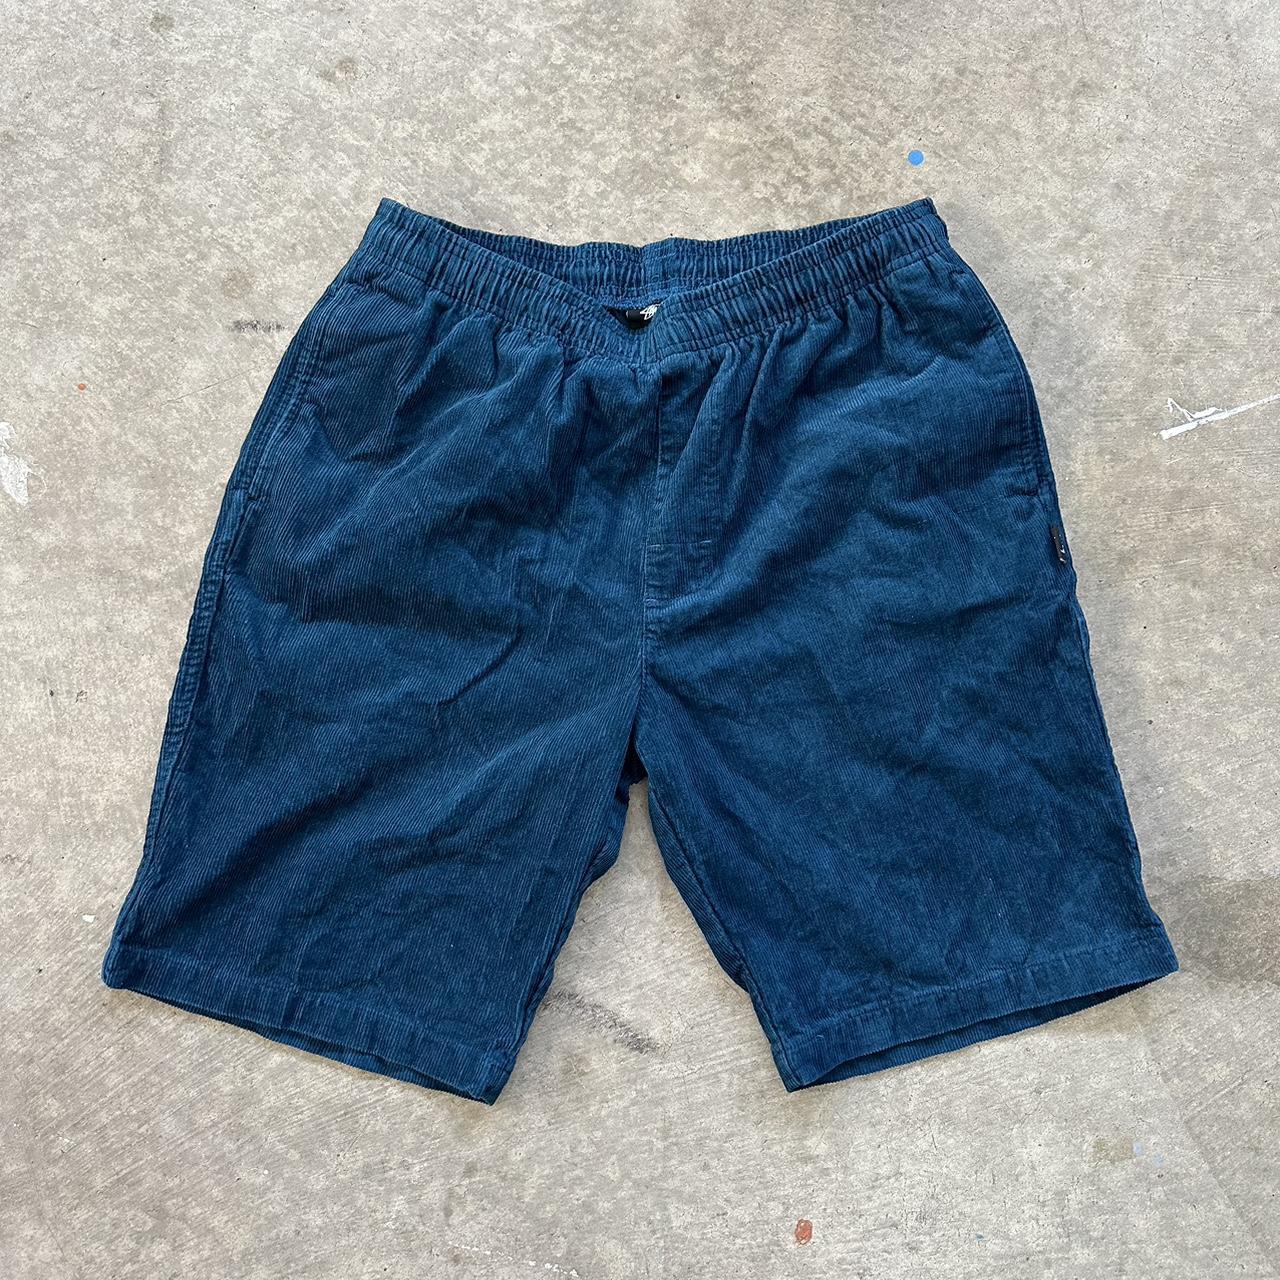 Find] Stussy Corduroy Shorts for Summer : r/FashionReps